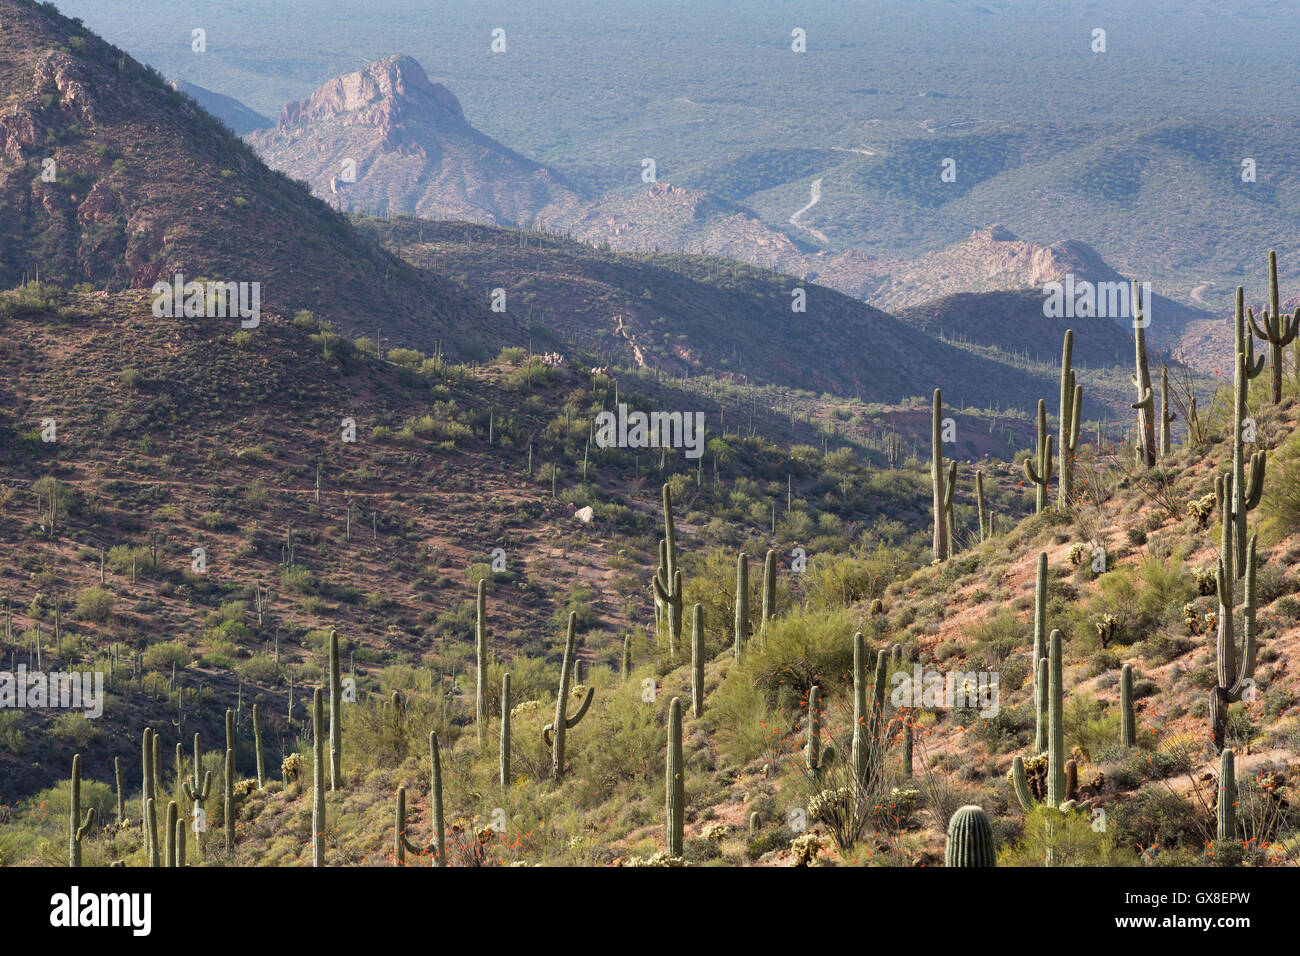 Saguaro-couverts des montagnes du désert autour de la Gila River Canyons de se stabiliser dans la distance. Gila River Canyons, Arizona Banque D'Images